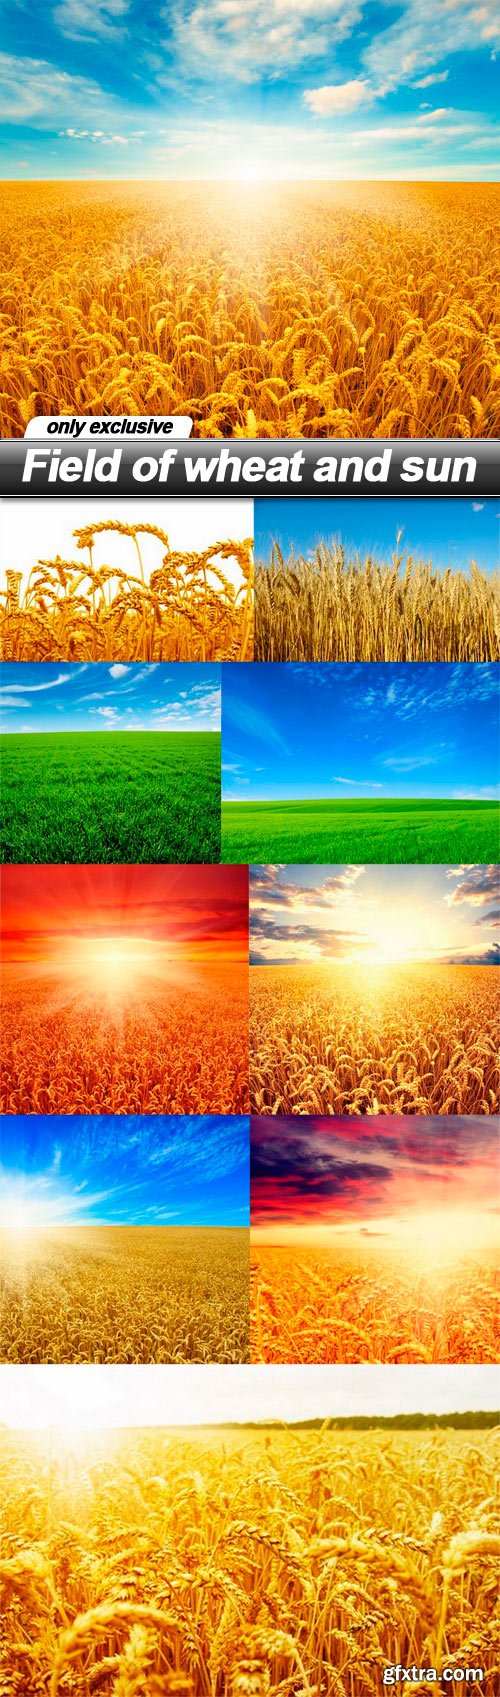 Field of wheat and sun - 10 UHQ JPEG